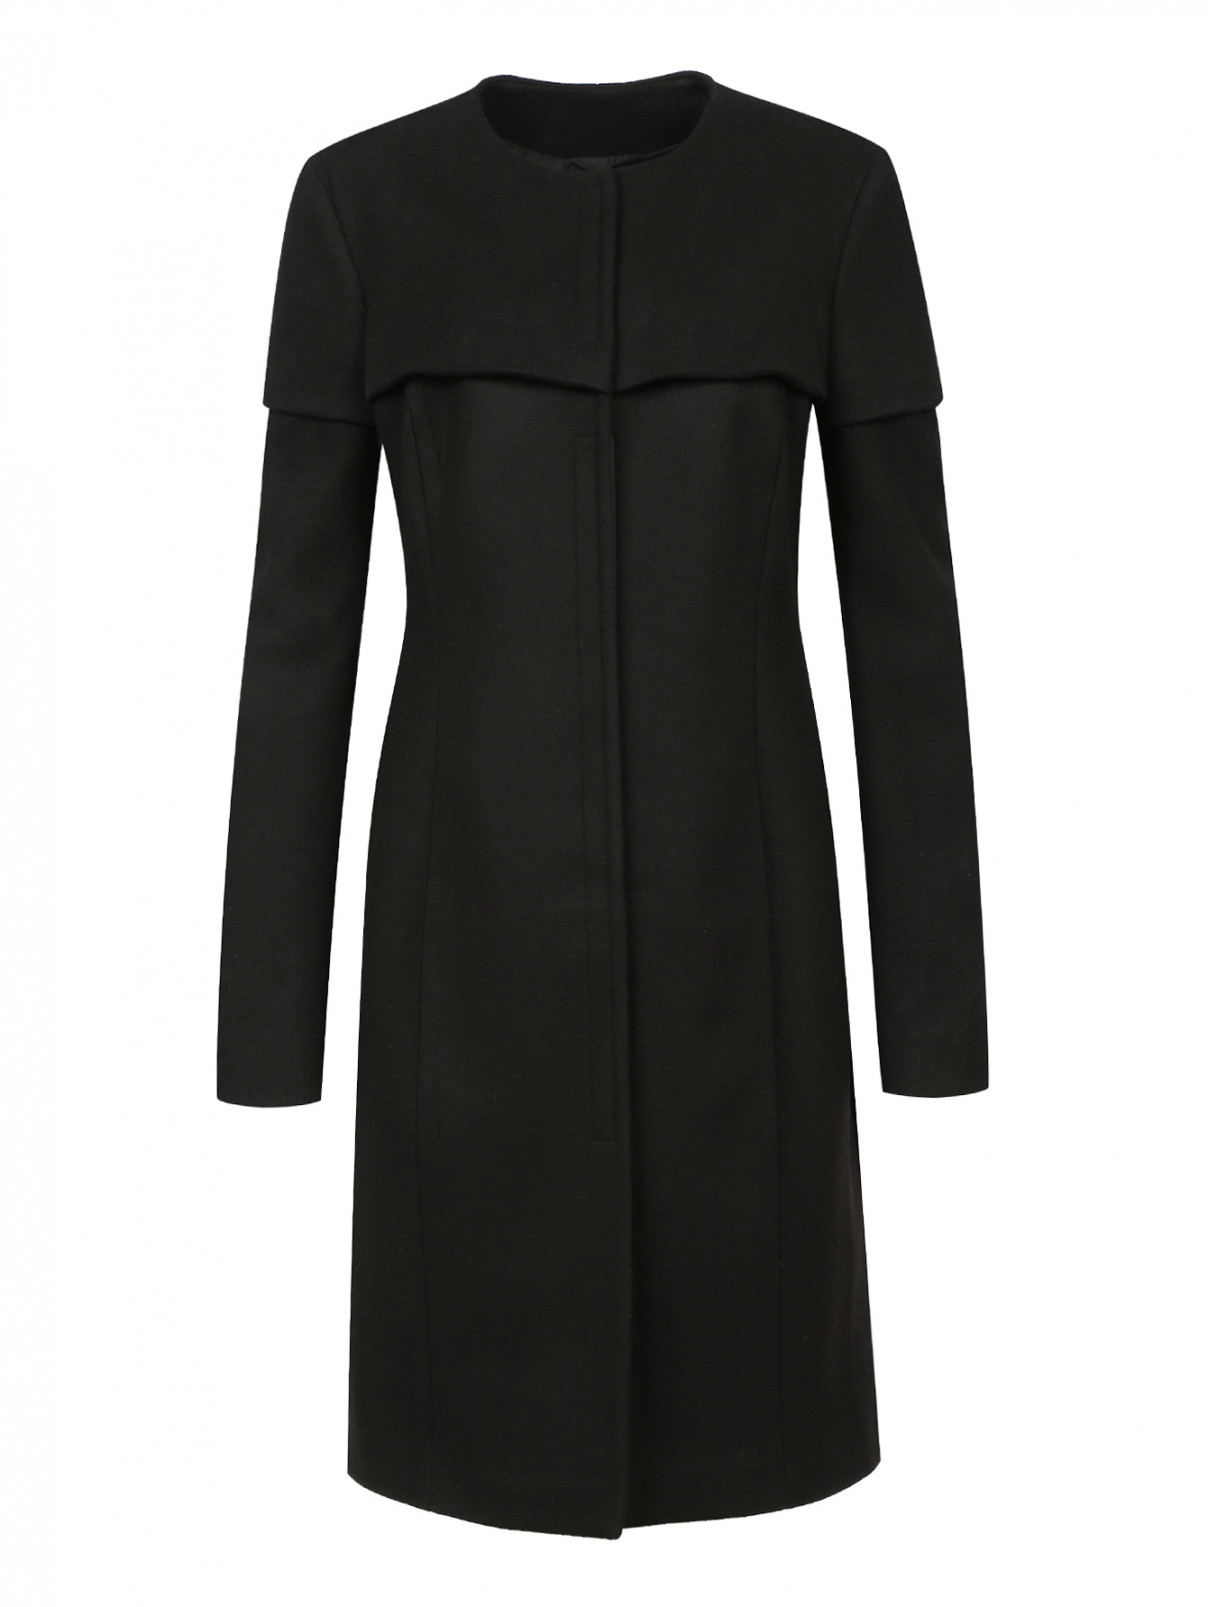 Пальто из шерсти на липучке Jil Sander  –  Общий вид  – Цвет:  Черный